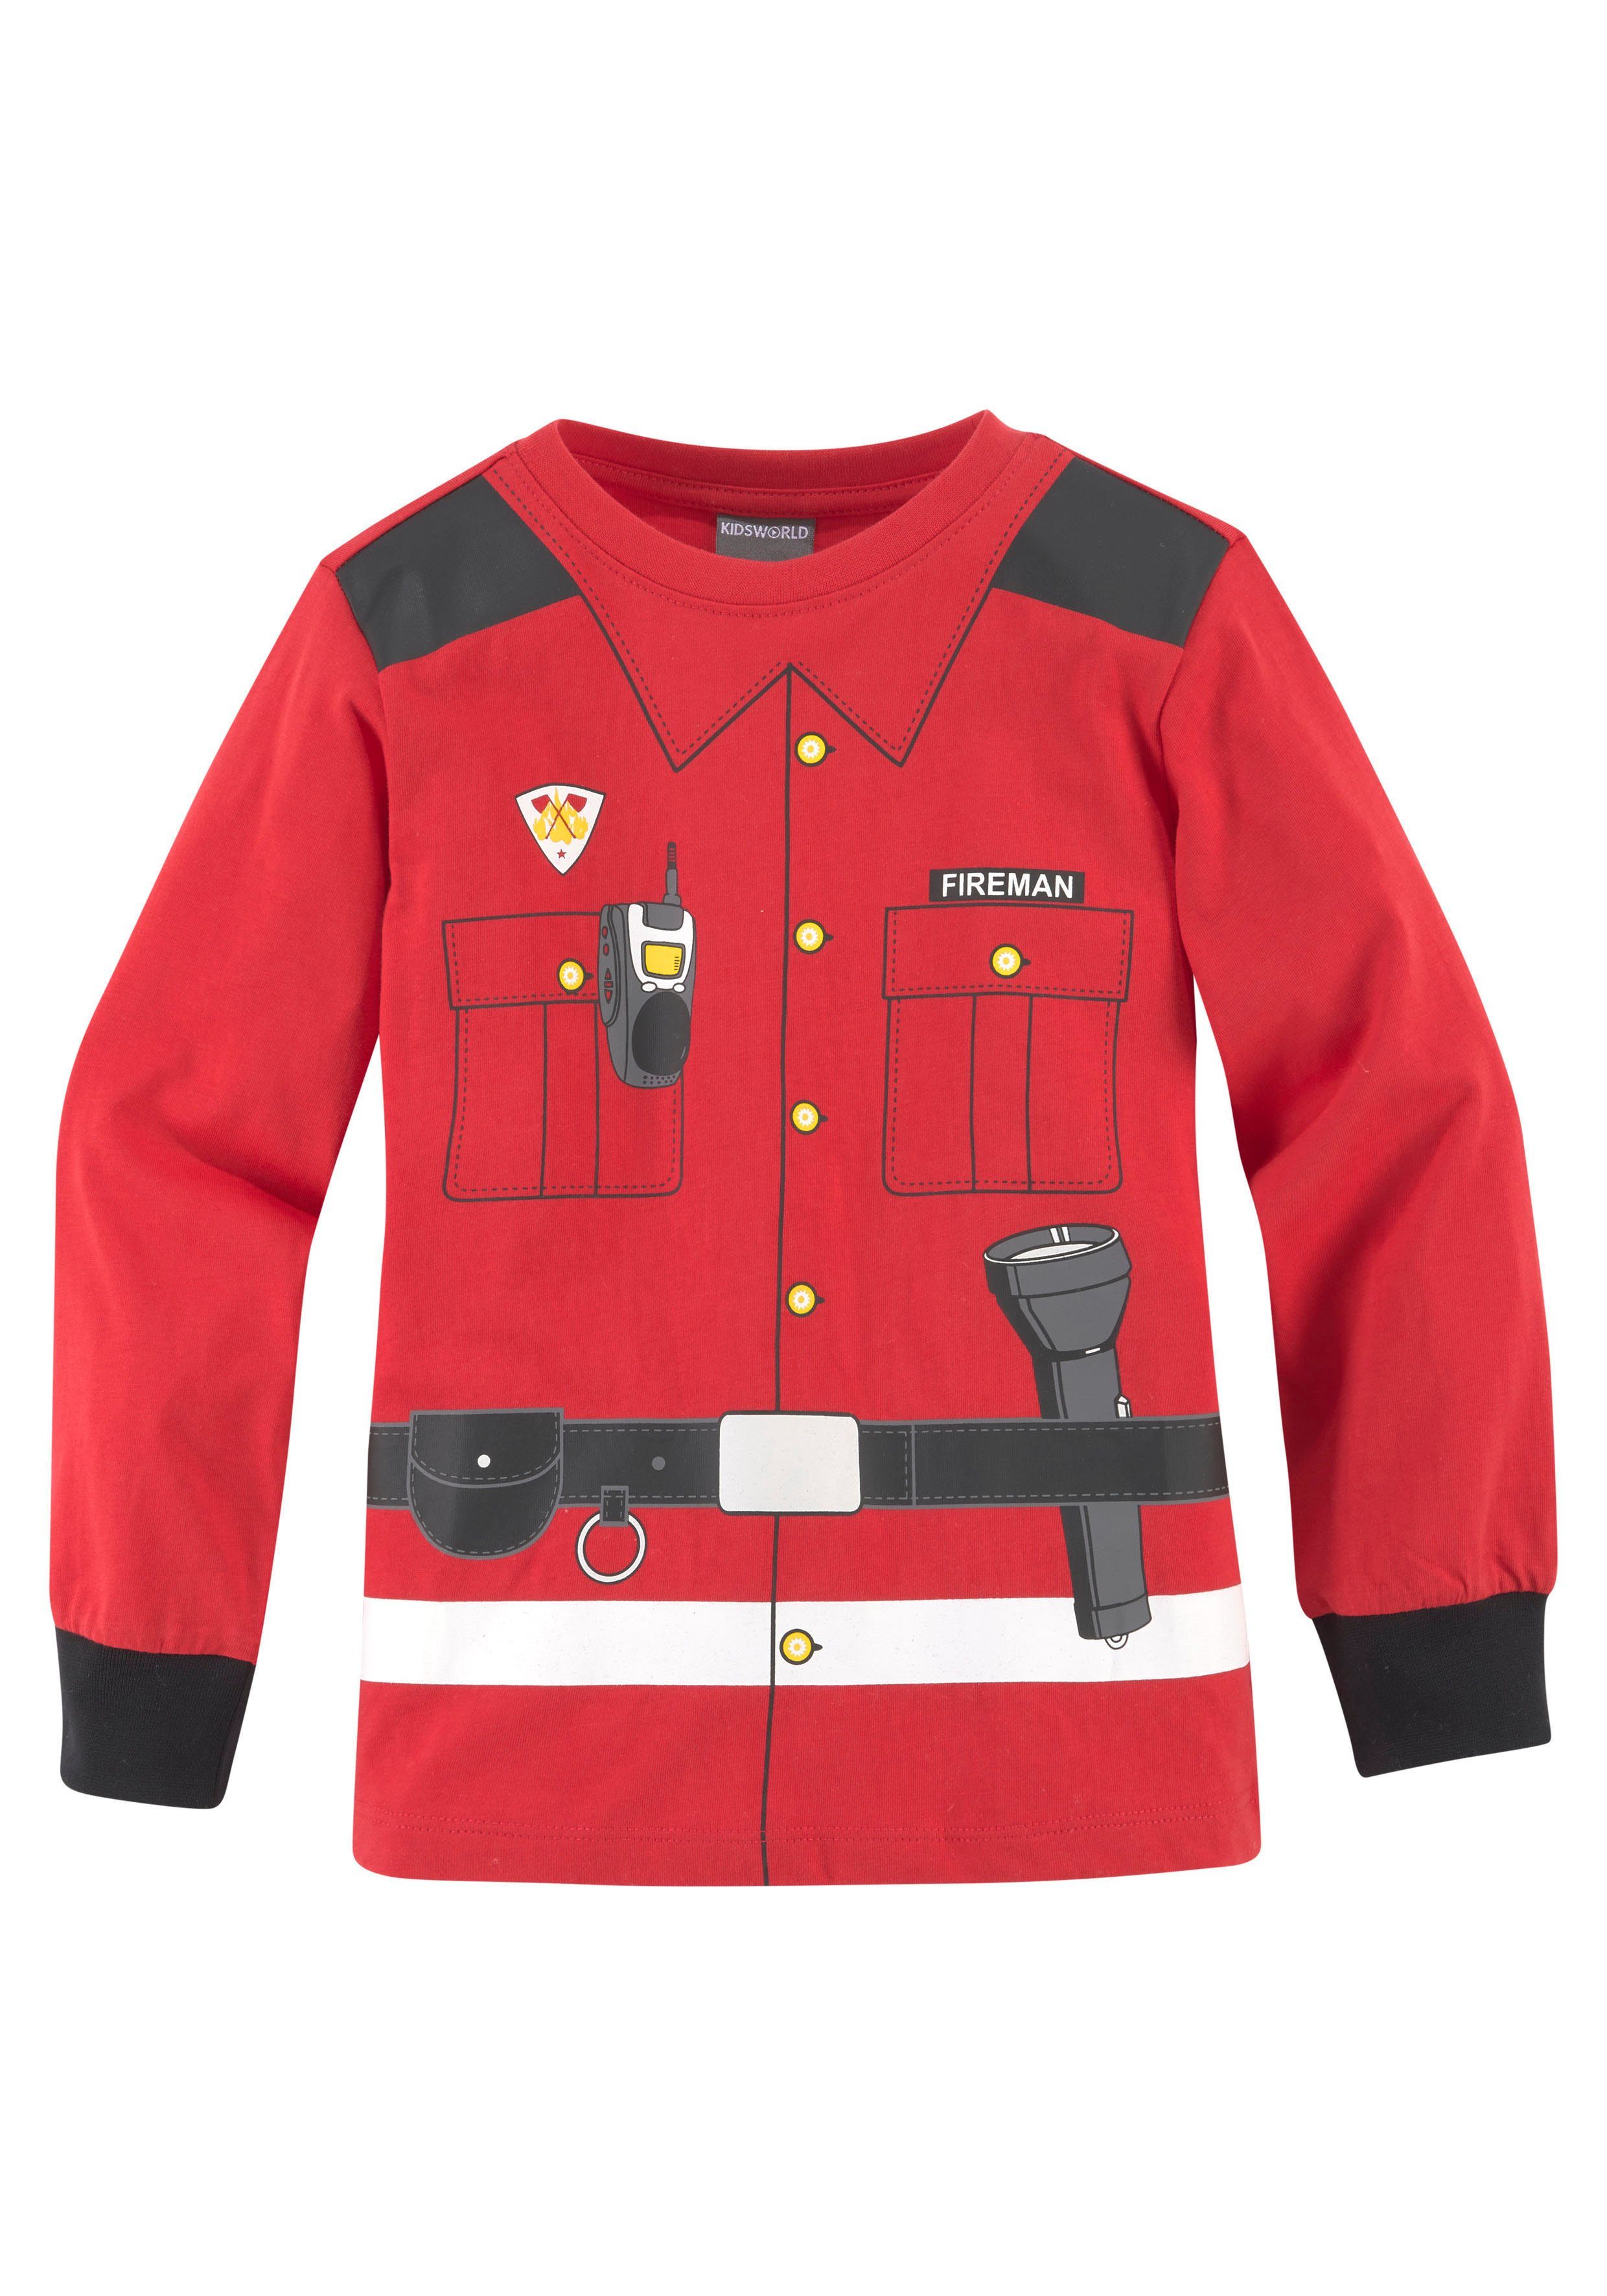 KIDSWORLD FEUERWEHR Langarmshirt Uniform-Druck